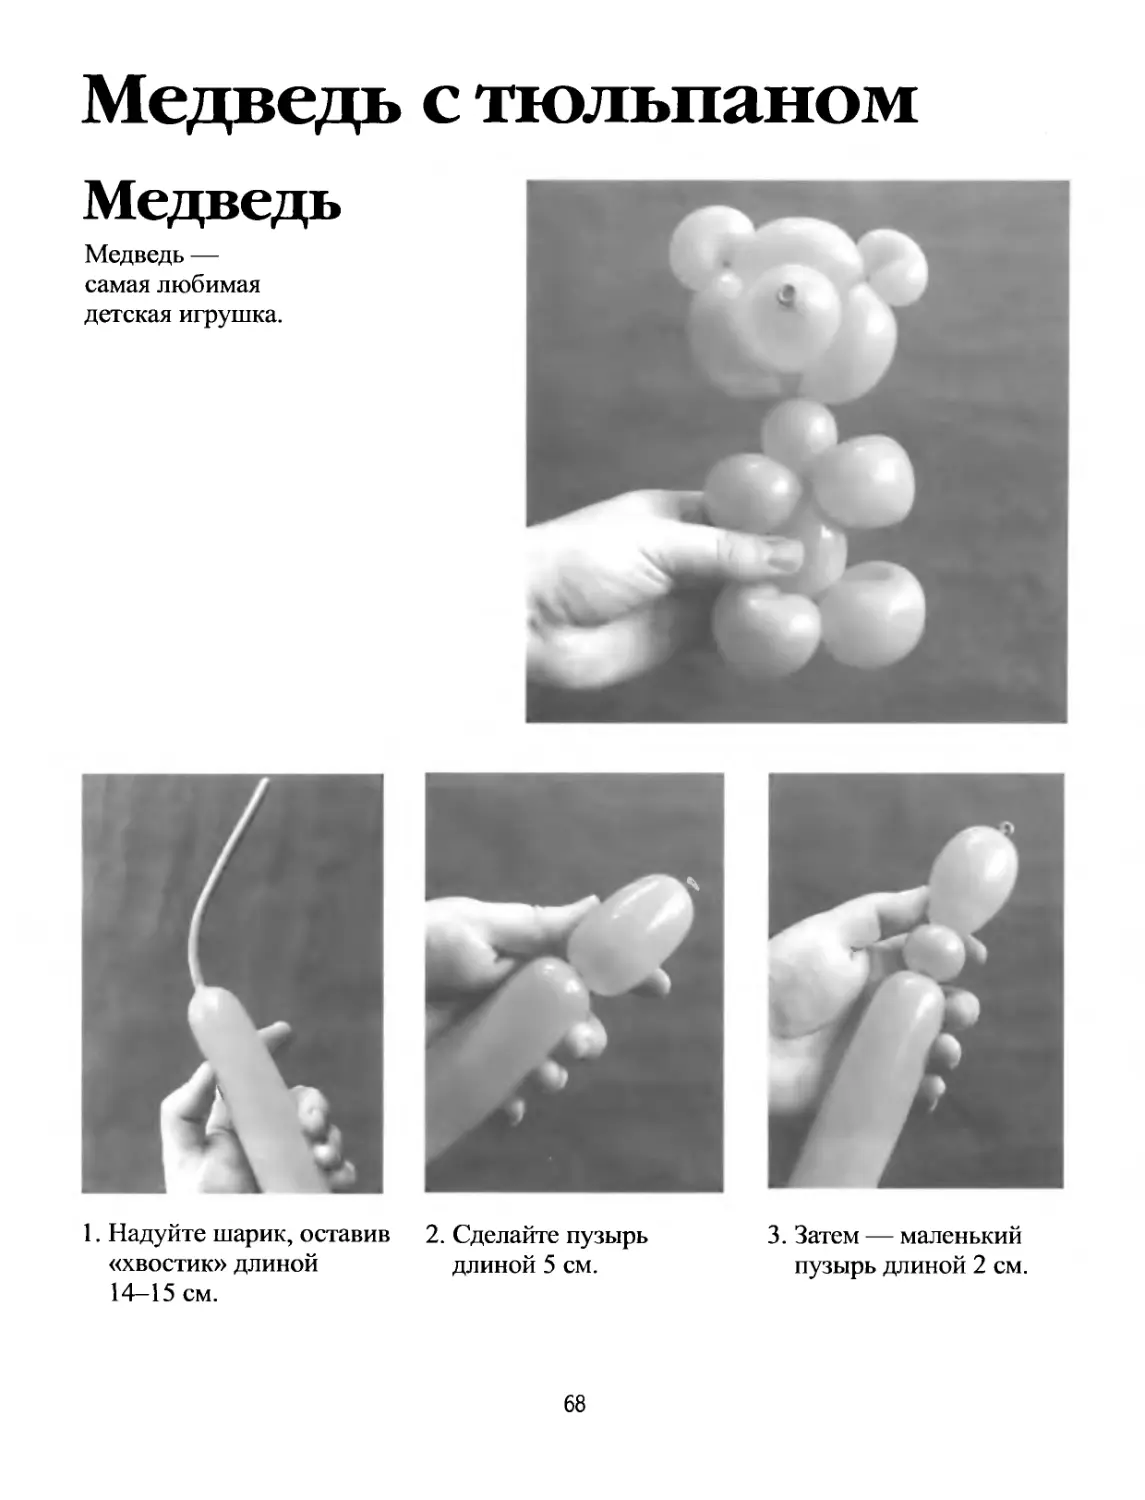 Мишка из шариков колбасок инструкция